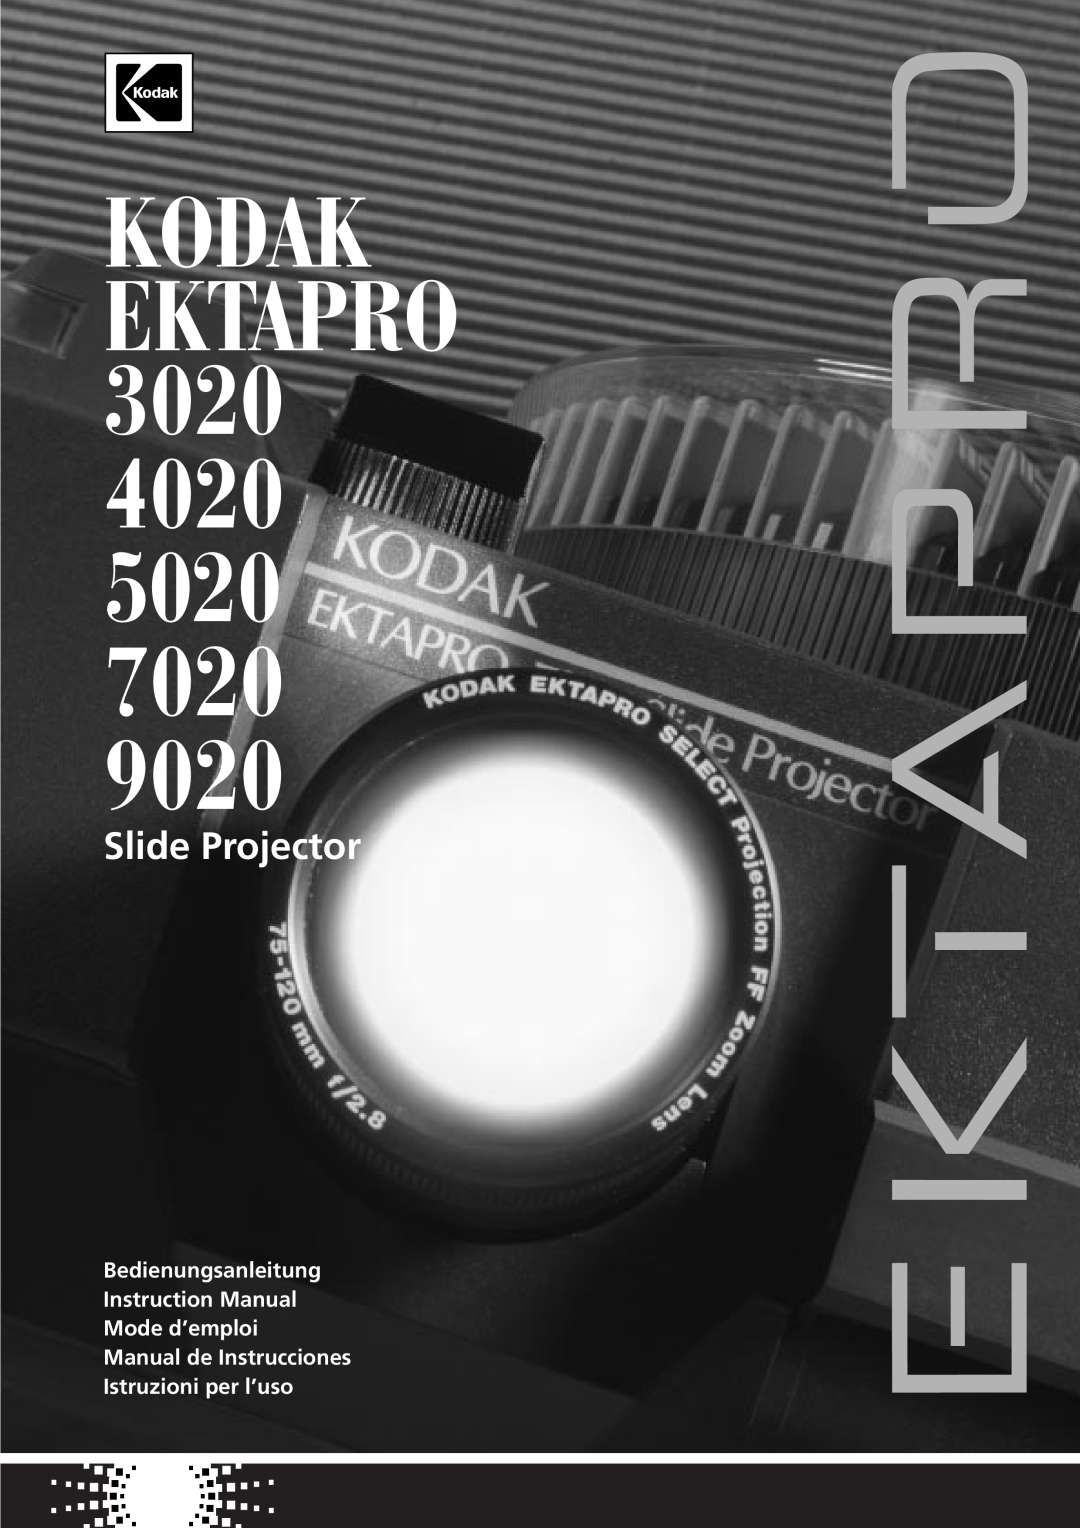 Kodak 7020, 9020, 5020 instruction manual KODAK EKTAPRO 3020, Slide Projector, Manual de Instrucciones Istruzioni per l’uso 